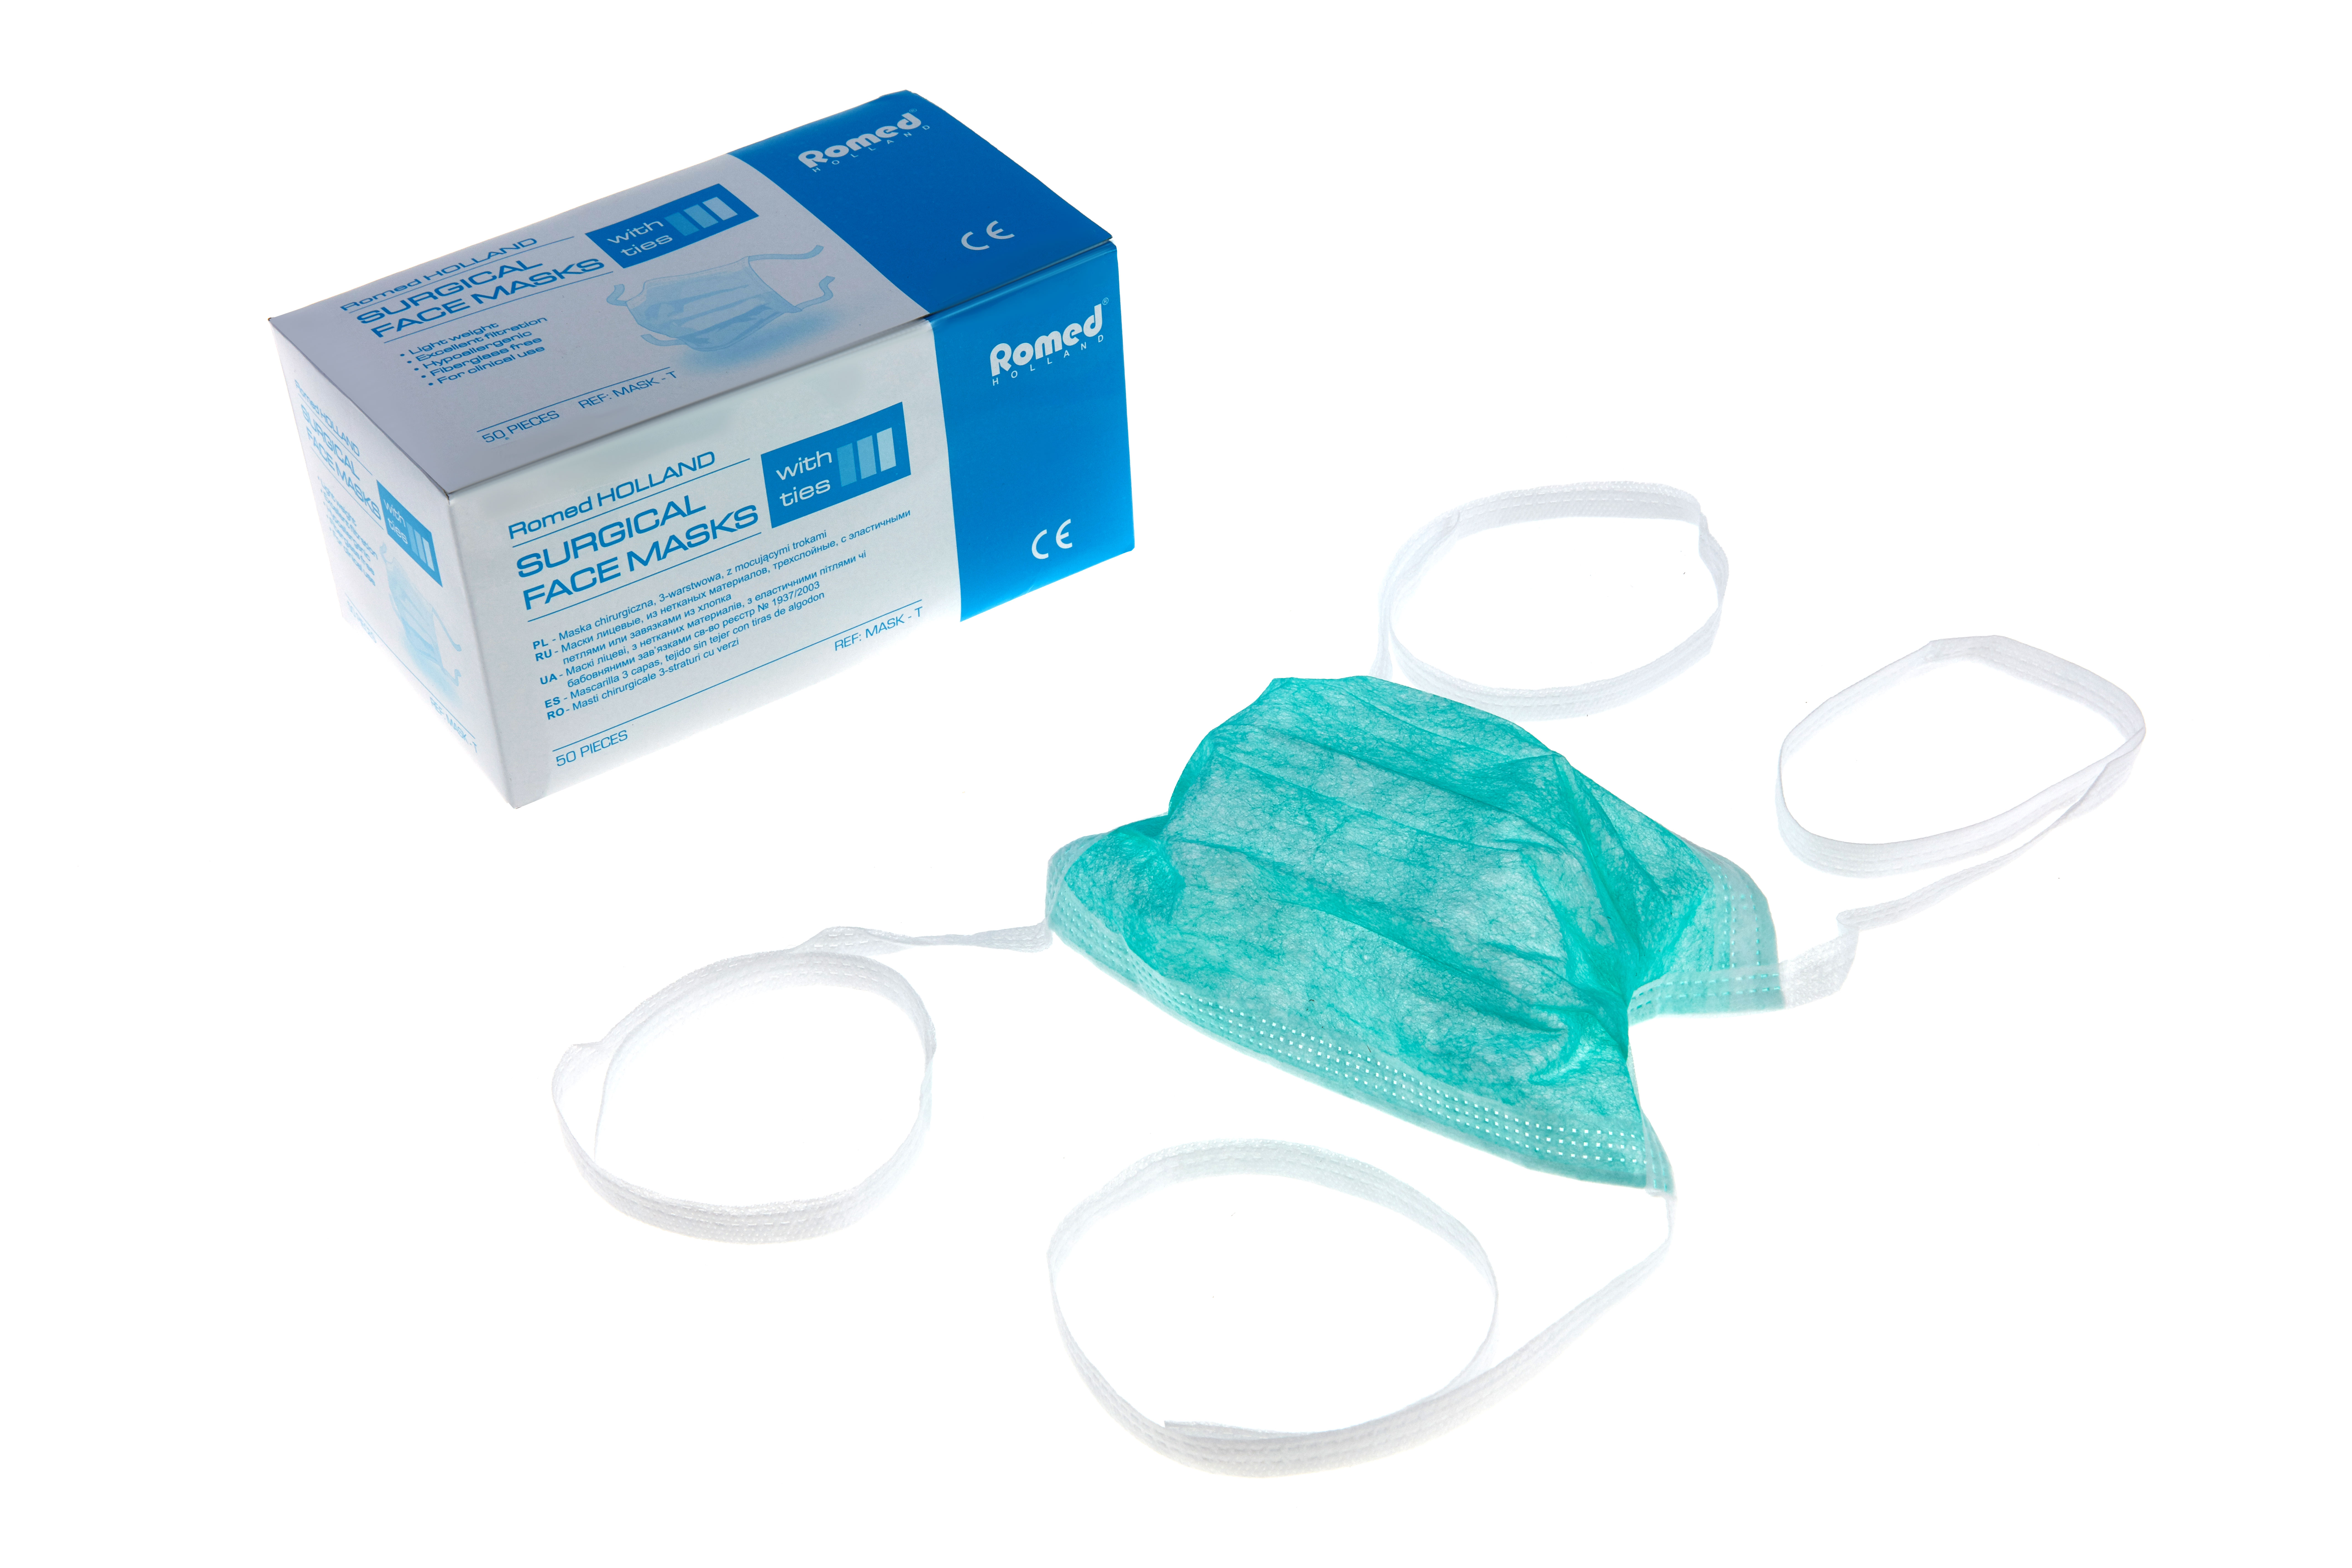 MASK-T Romed chirurgische mondmaskers type IIR, 3-ply, met bandjes, blauw, per 50 stuks in een binnendoosje, 20 x 50 stuks = 1.000 stuks in een karton.